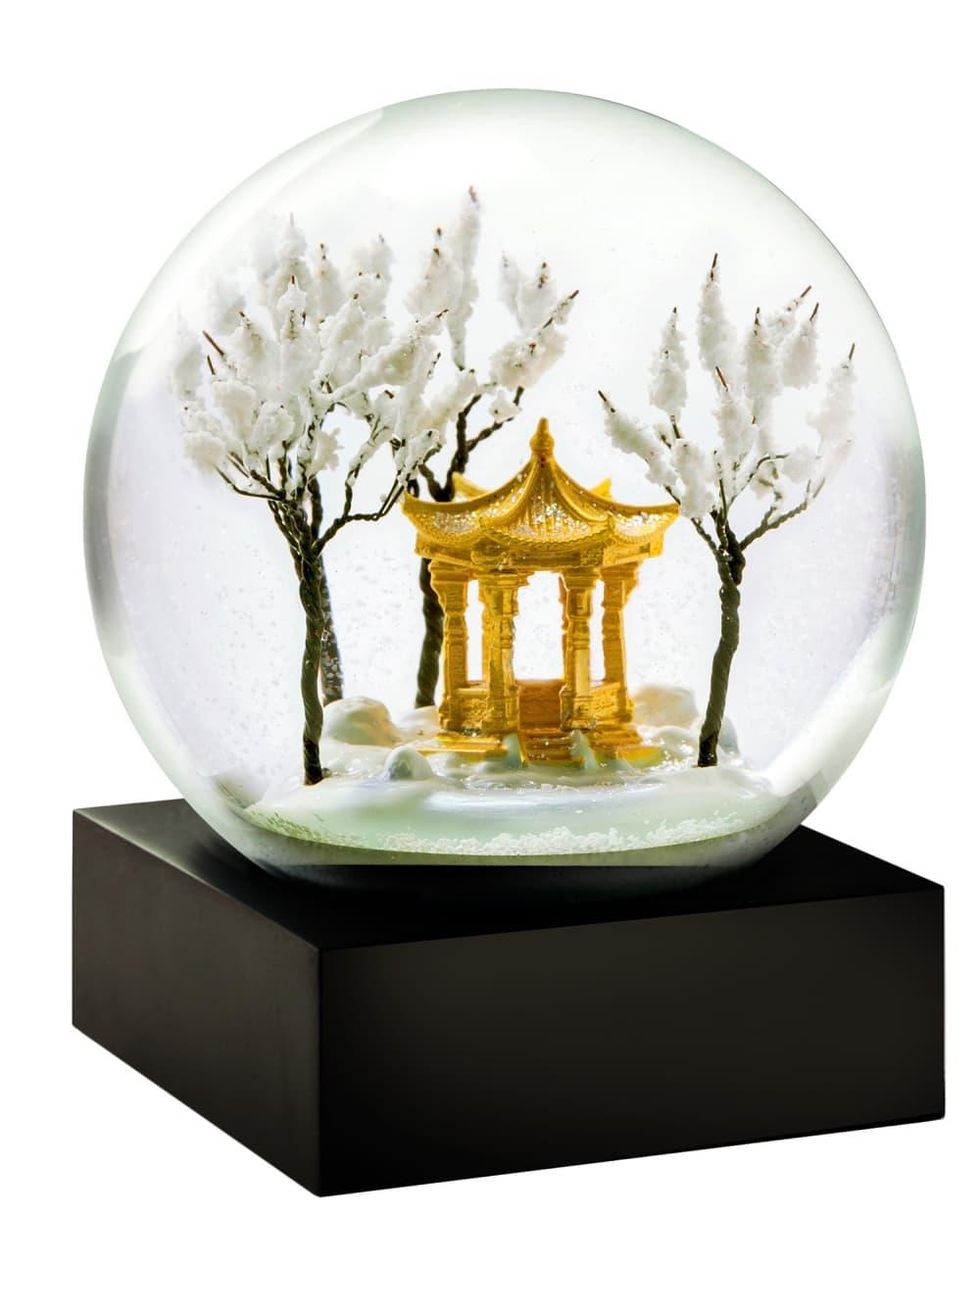 Pagoda snow globe at the Lotus Shop